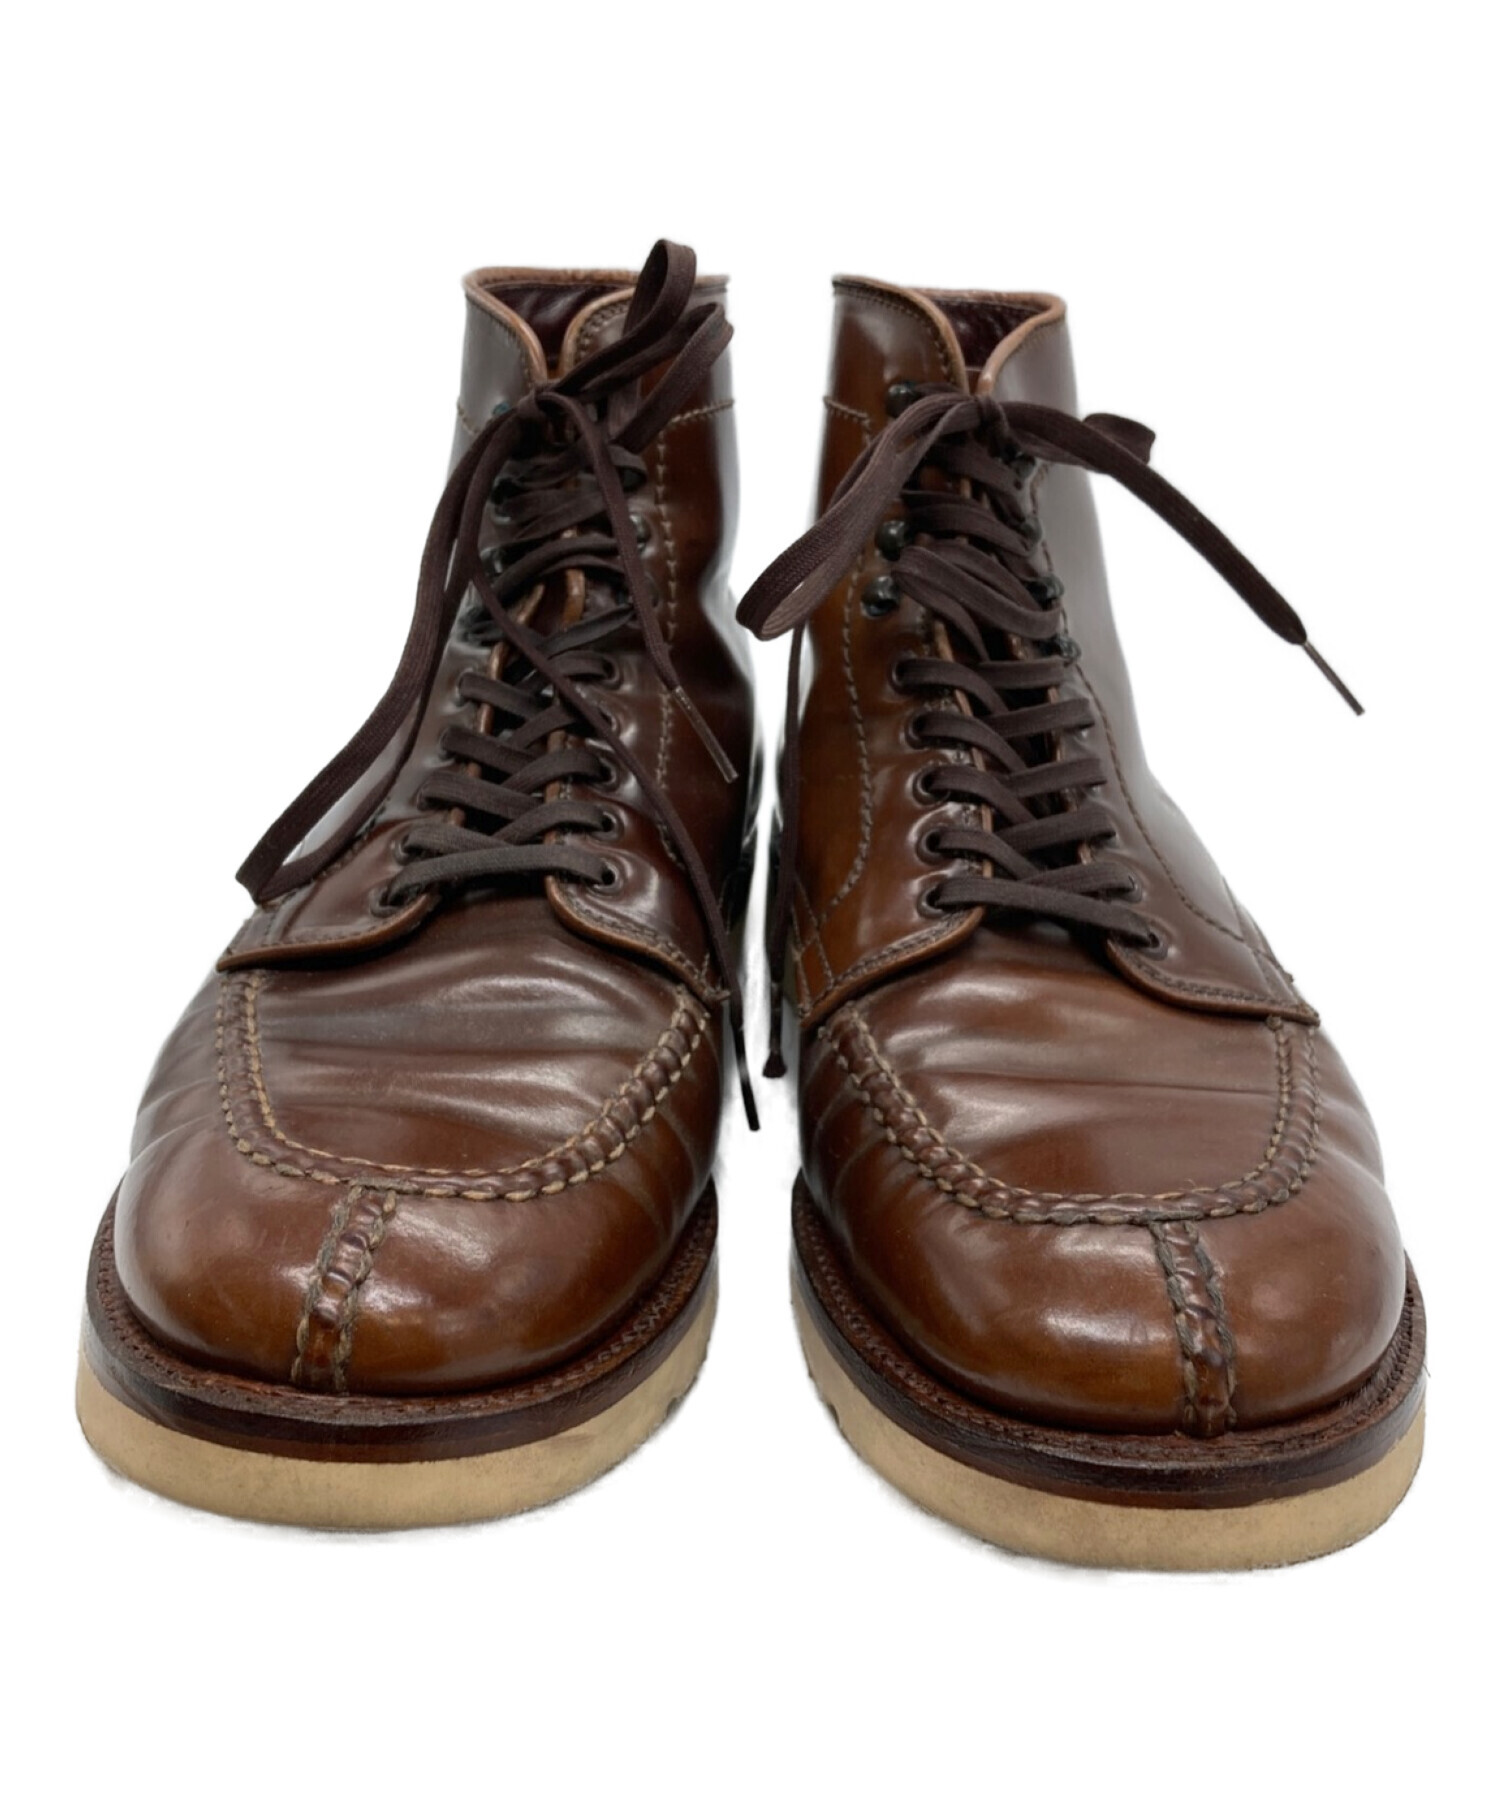 日本購入サイト Alden 8 オールデン ブーツ バーニーズ ニューヨーク - 靴